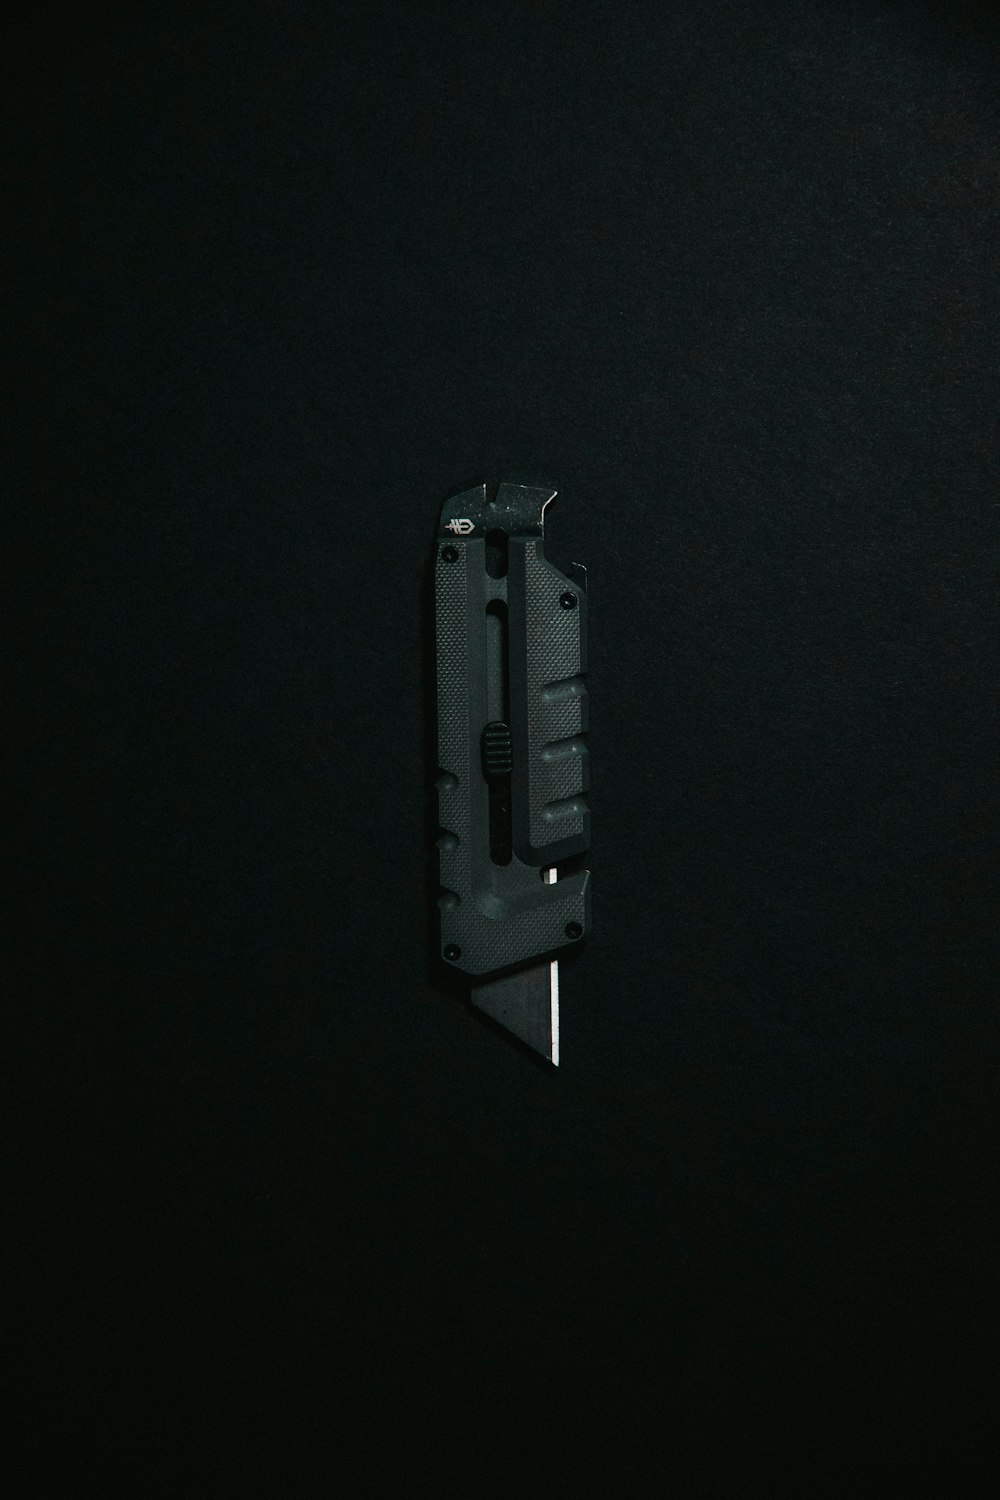 black and gray metal tool